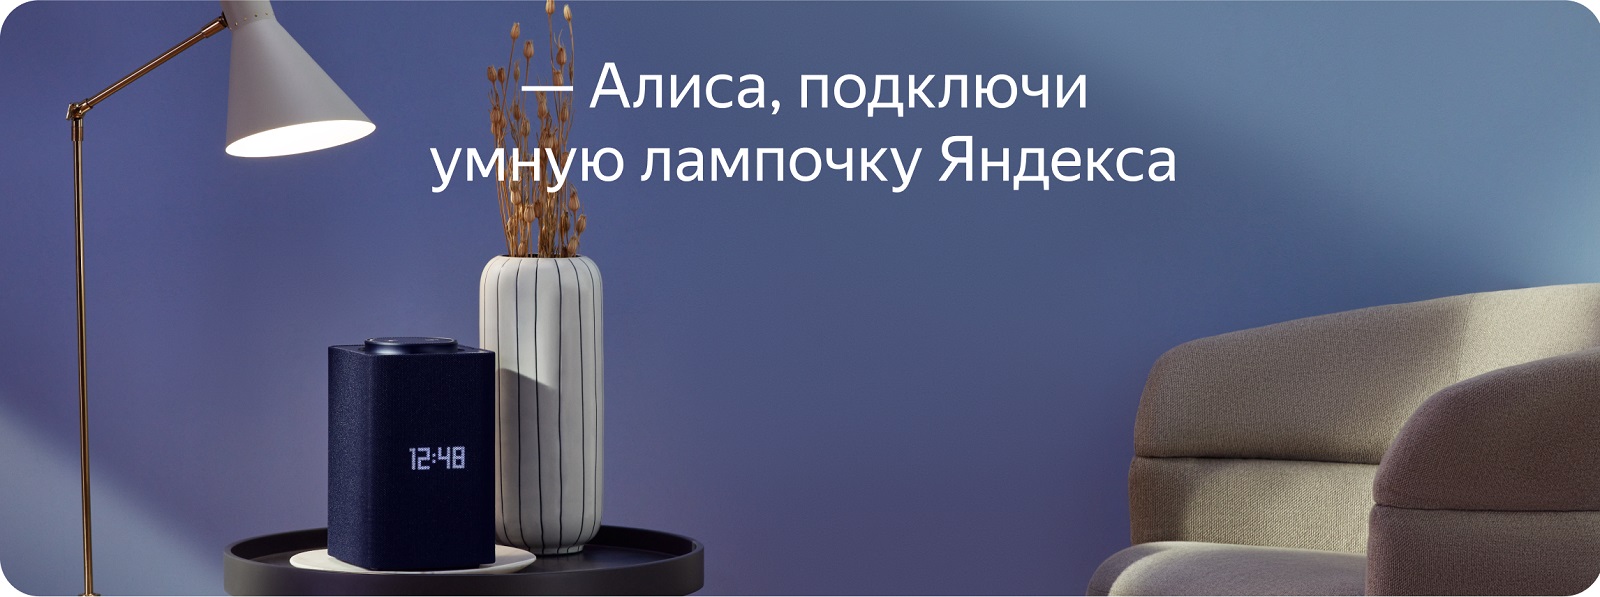 Умная лампочка Яндекса (E27) YNDX-00501